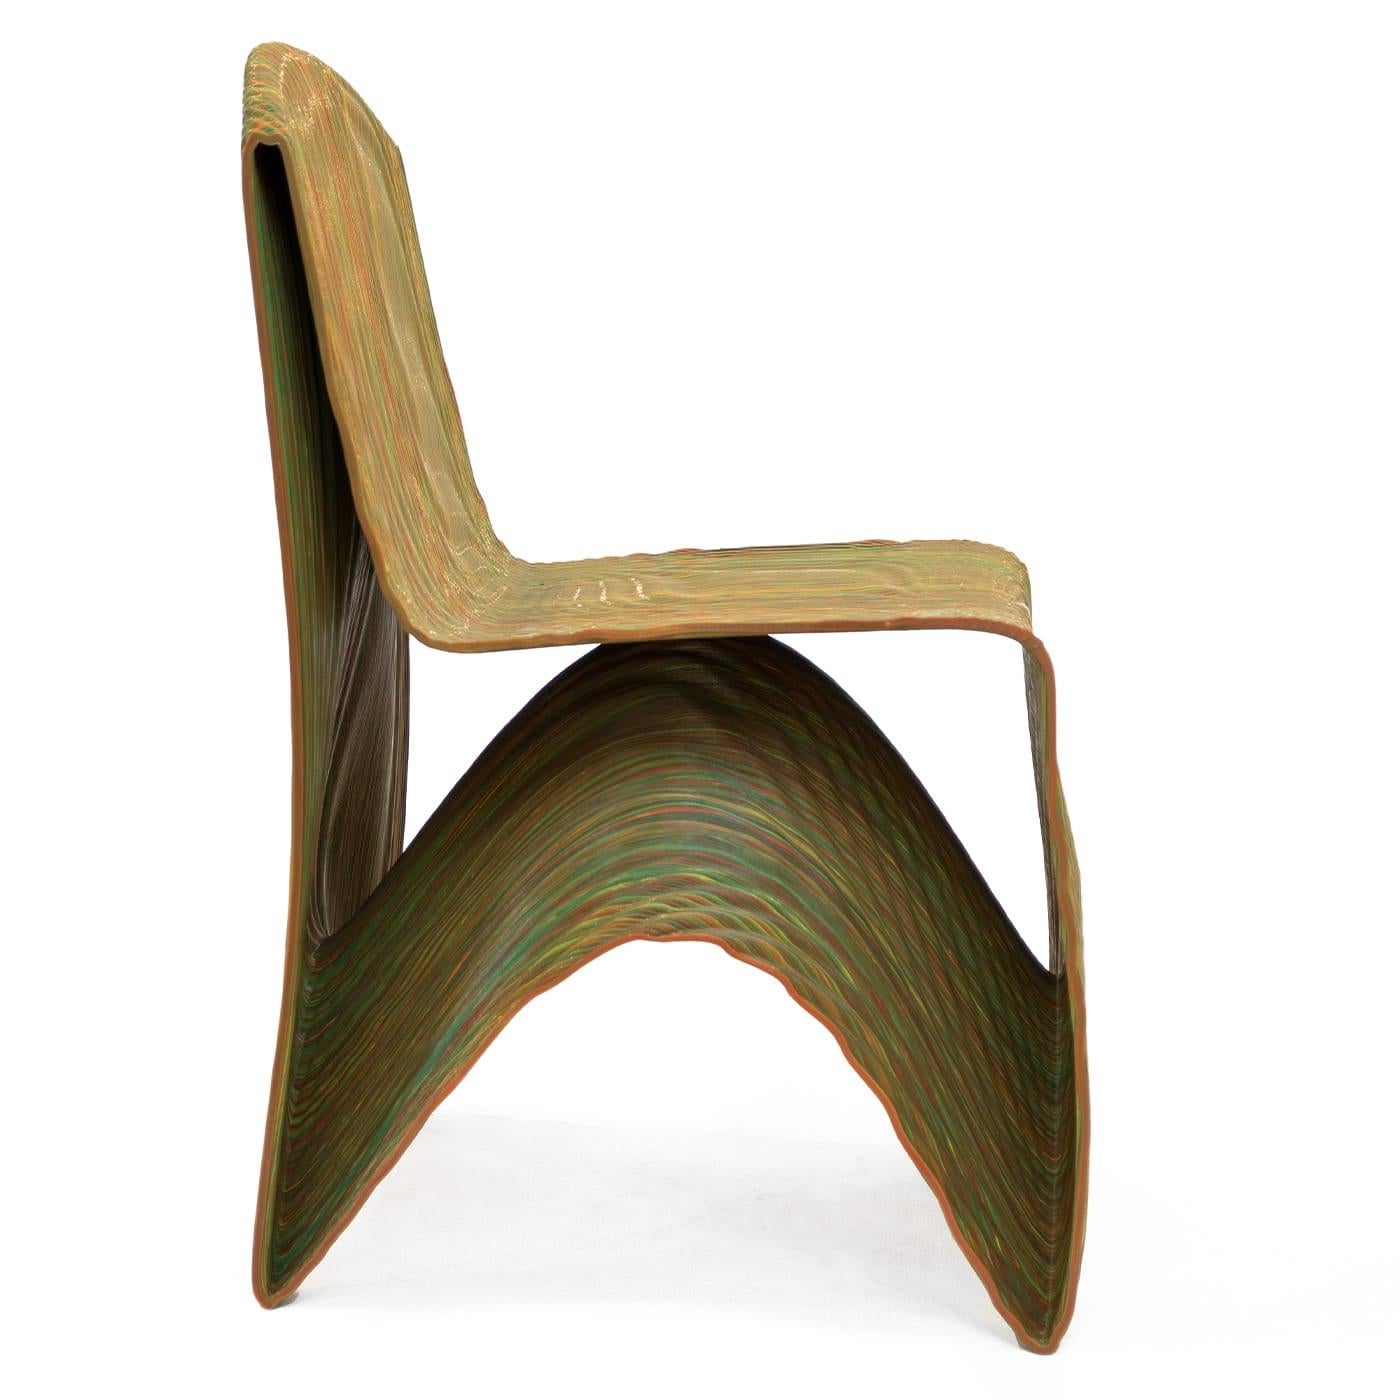 Santorini ist ein Stuhl, der Leichtigkeit und Ästhetik vereint. Er wurde von Medaarch im Jahr 2020 hergestellt und passt sich wie ein Körper aus kontinuierlichem Material an. Der 3D-gedruckte Sitz aus PETG oder PLA eignet sich sowohl für Innenräume